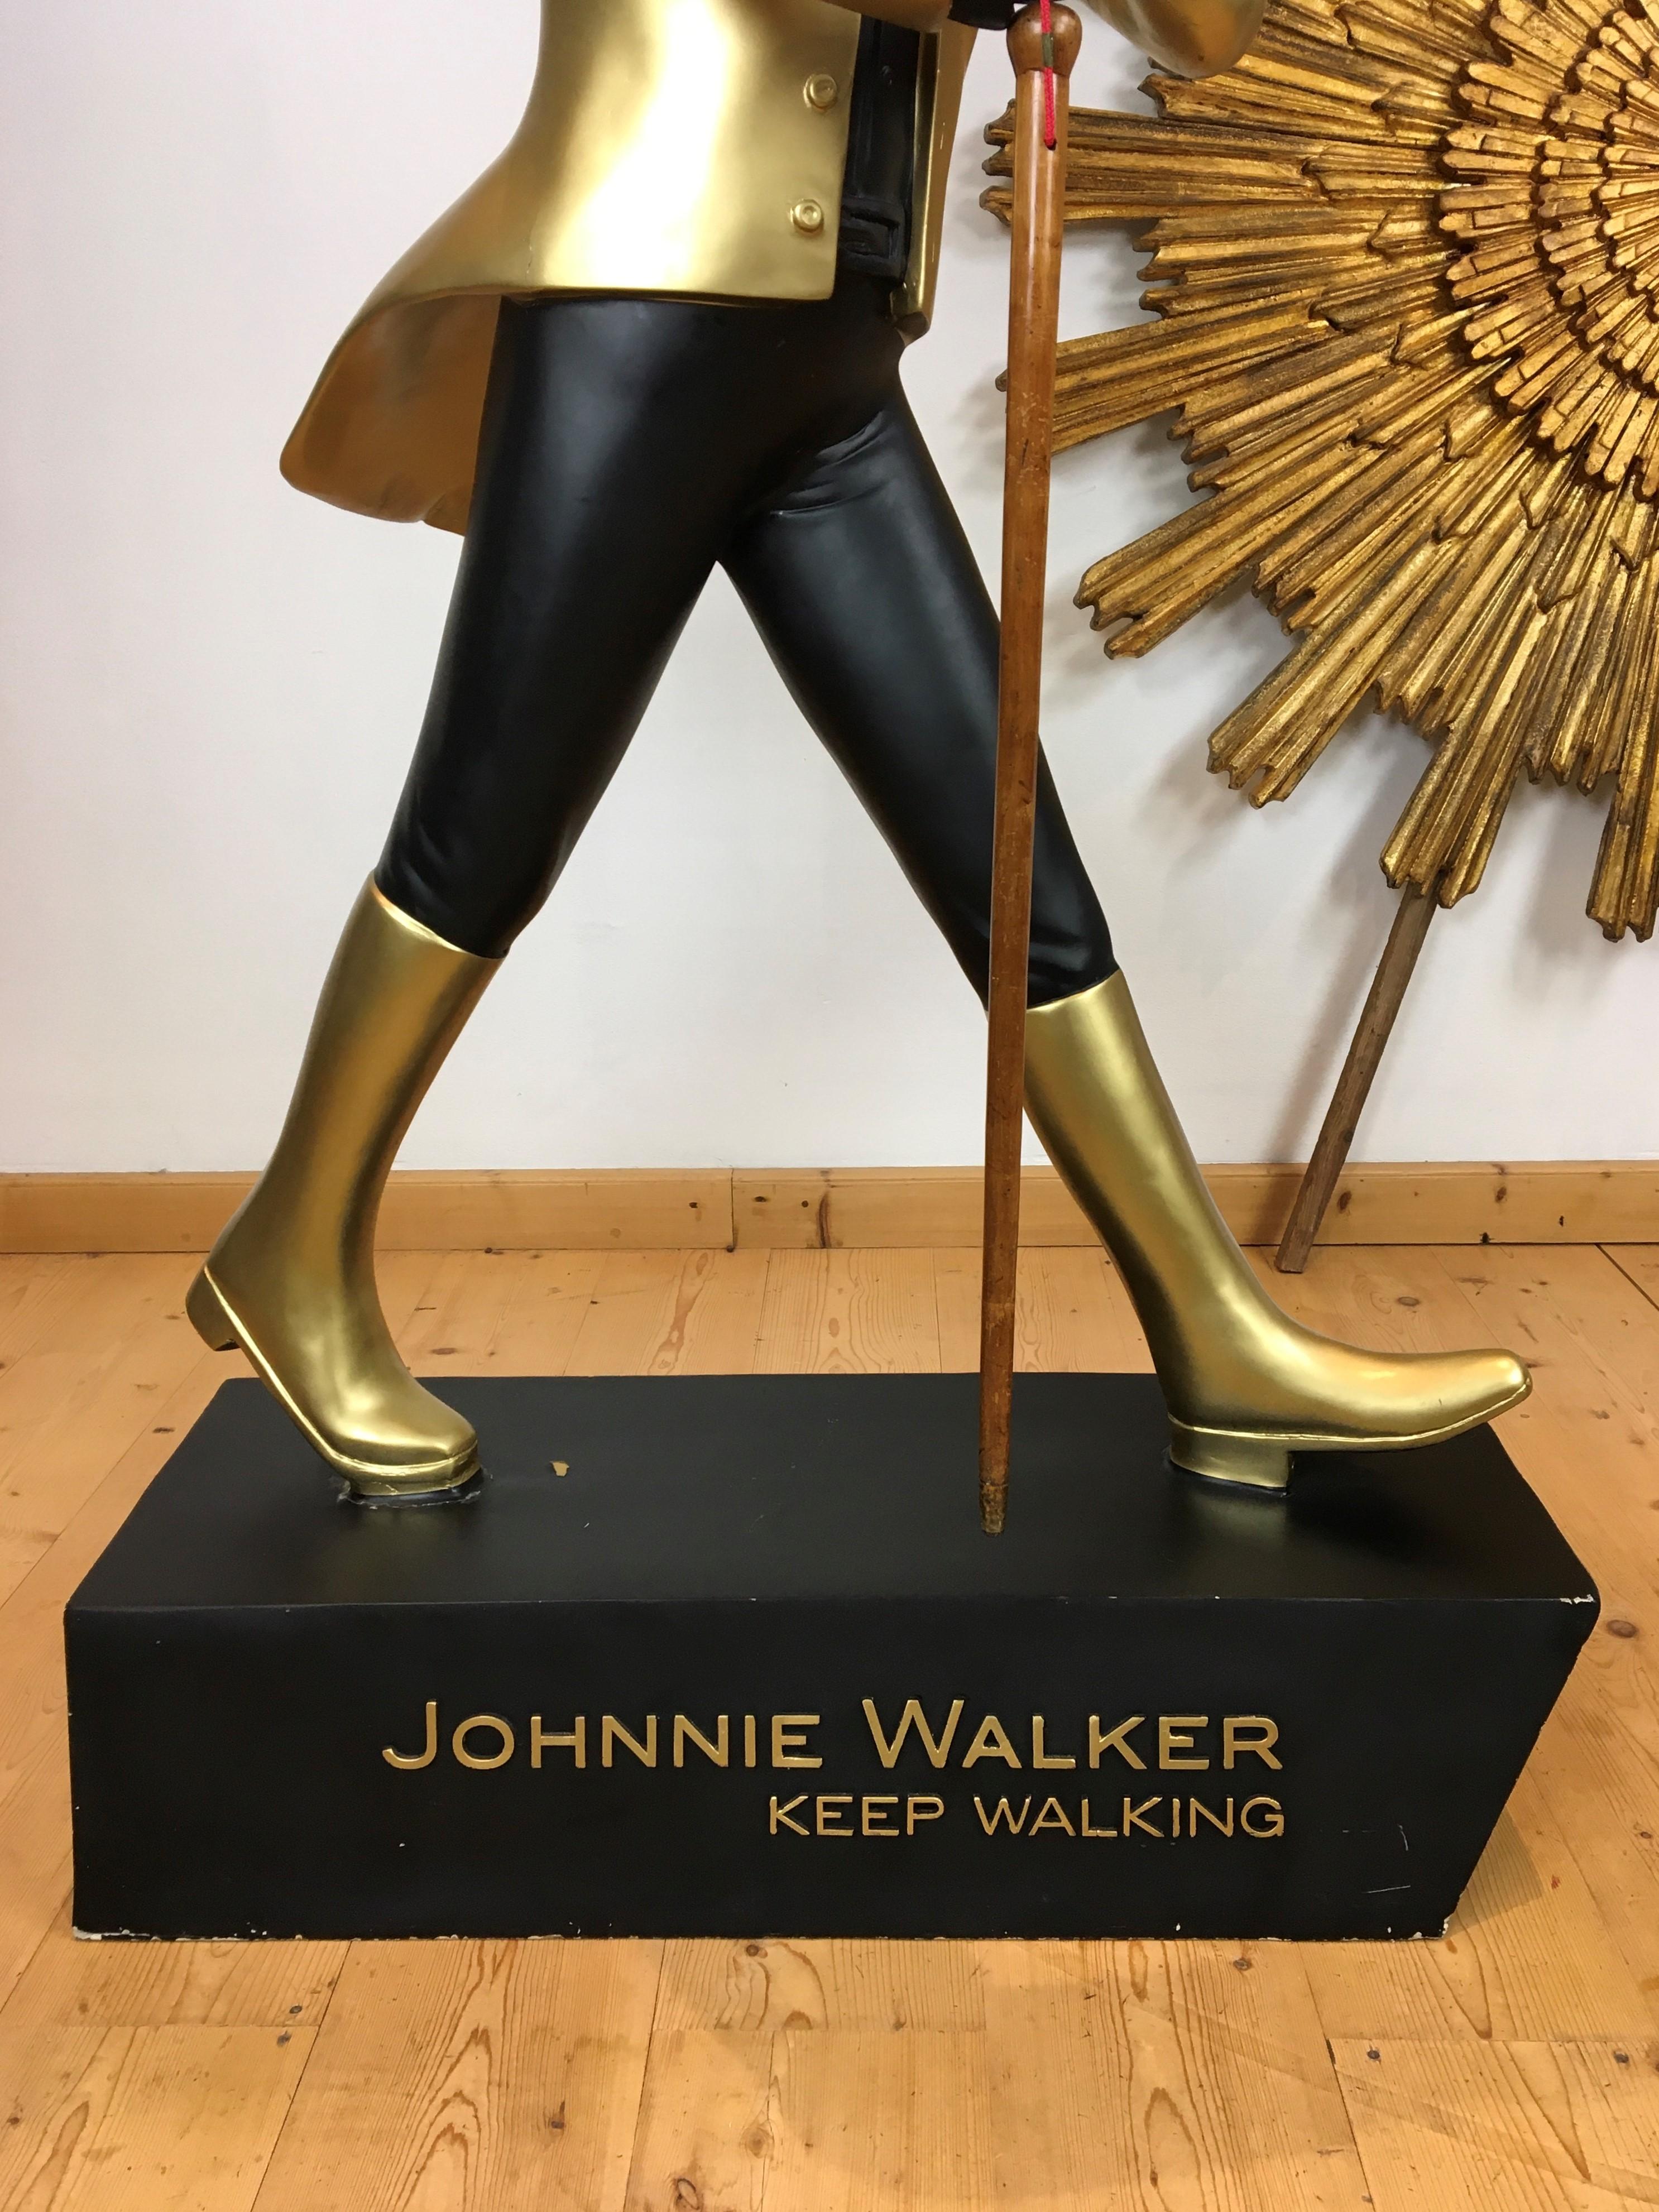 johnnie walker statue price